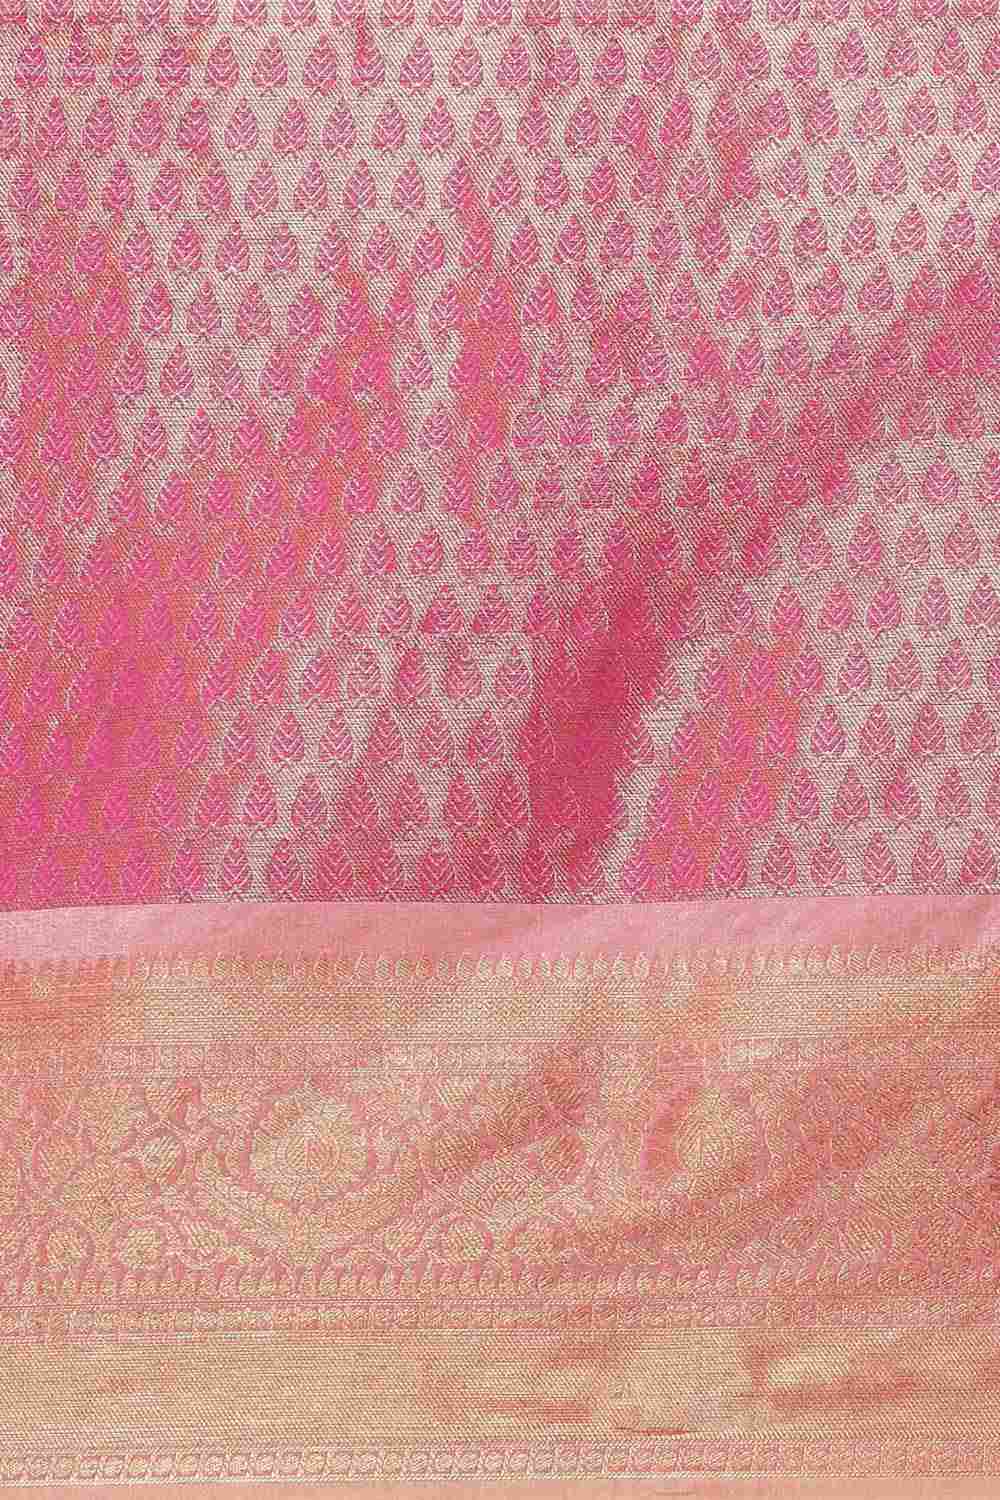 Buy Pink Art Silk Ethnic Motifs Banarasi Saree Online - Back 